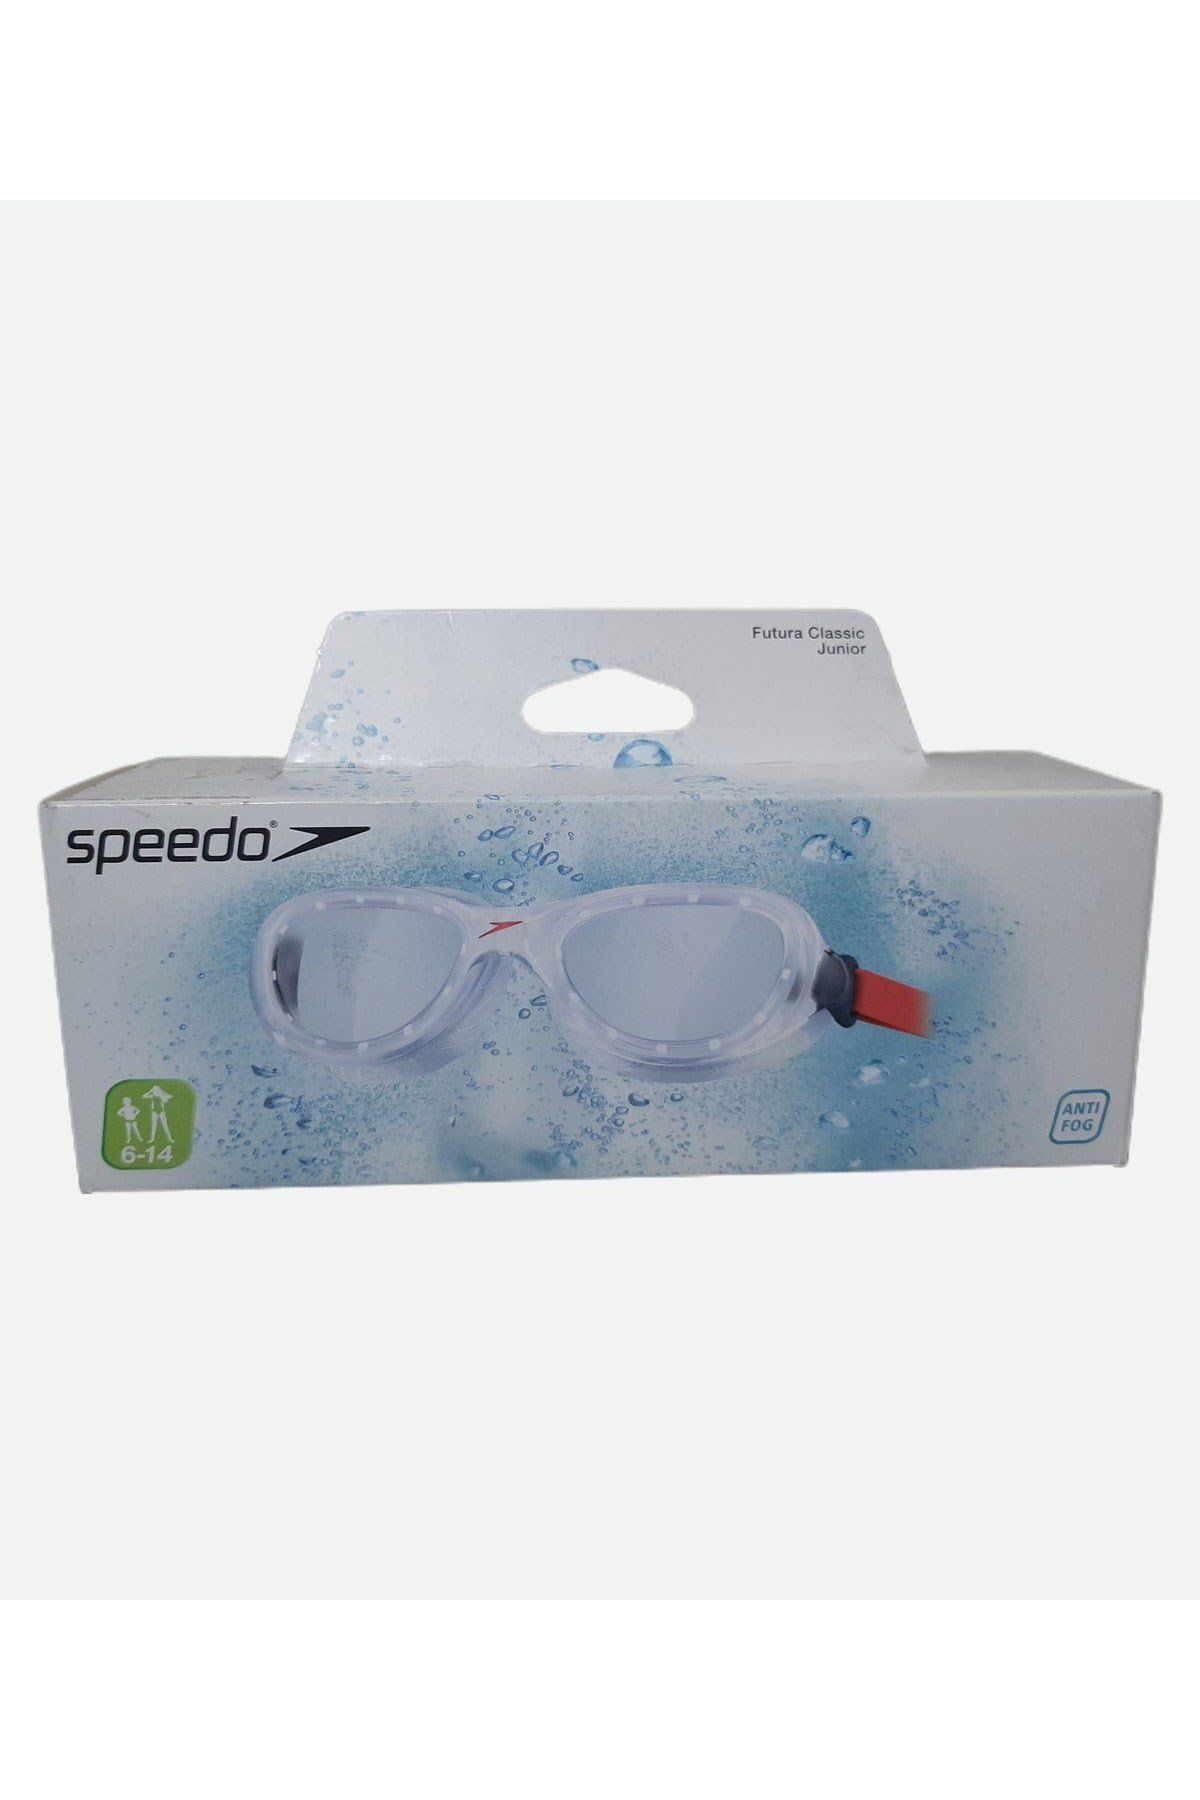 SPEEDO Futura Classic Ju Red/clear Gözlük 10900b991